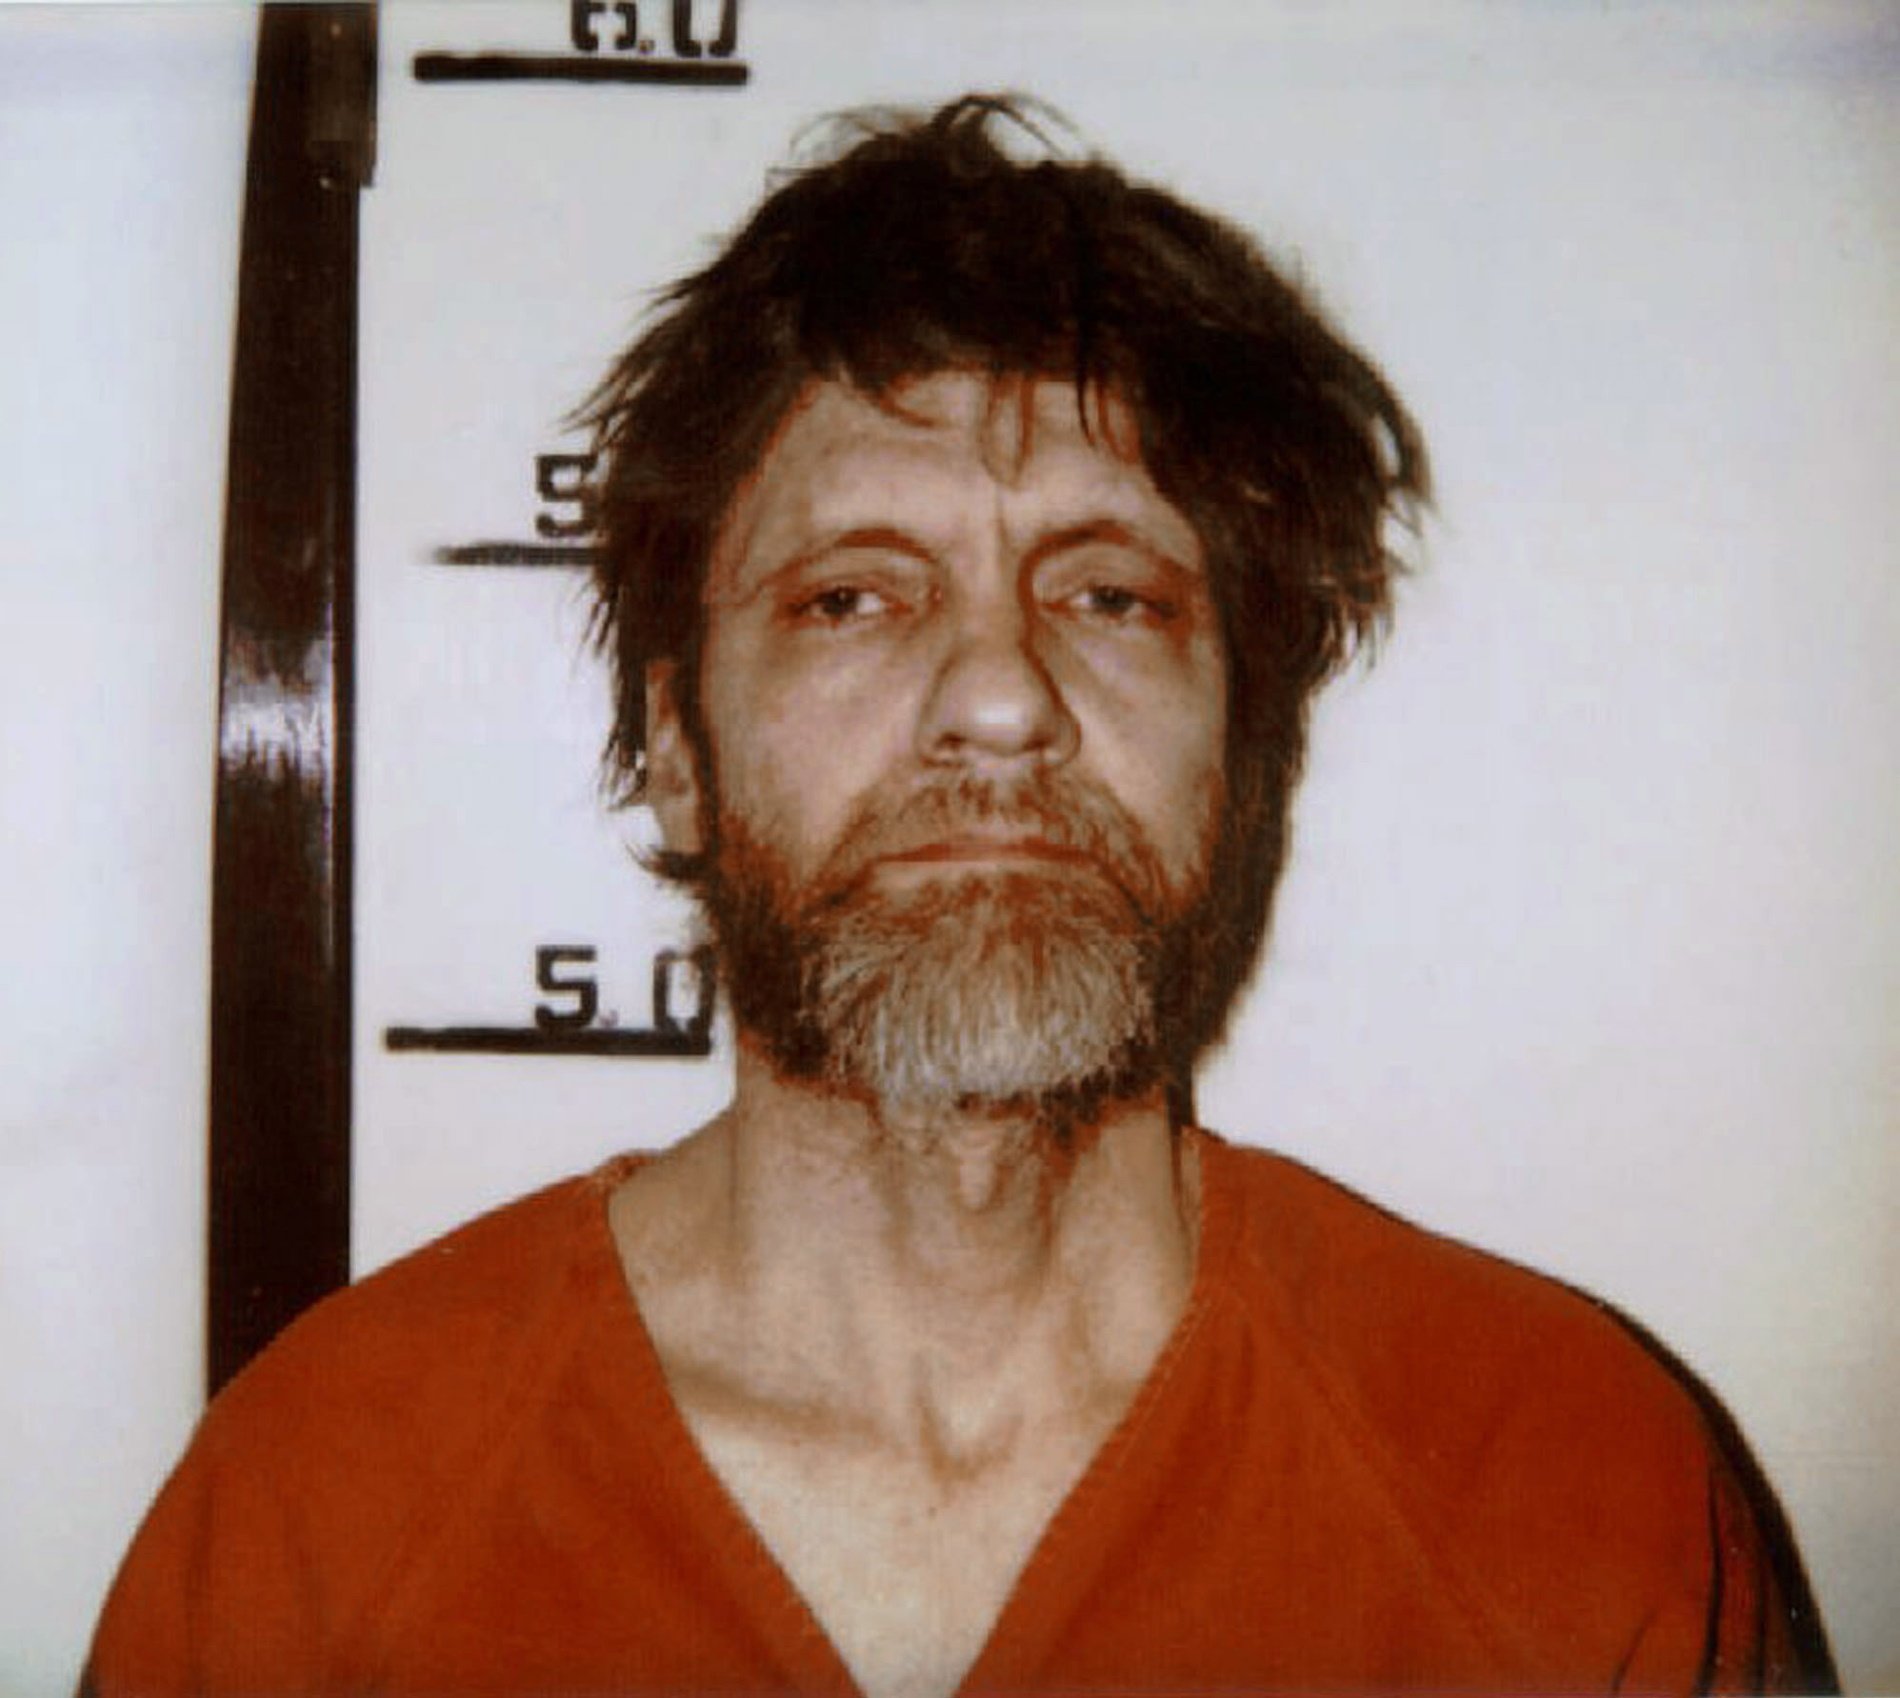 Muere el terrorista Ted Kaczynski, más conocido como Unabomber, a los 81 años